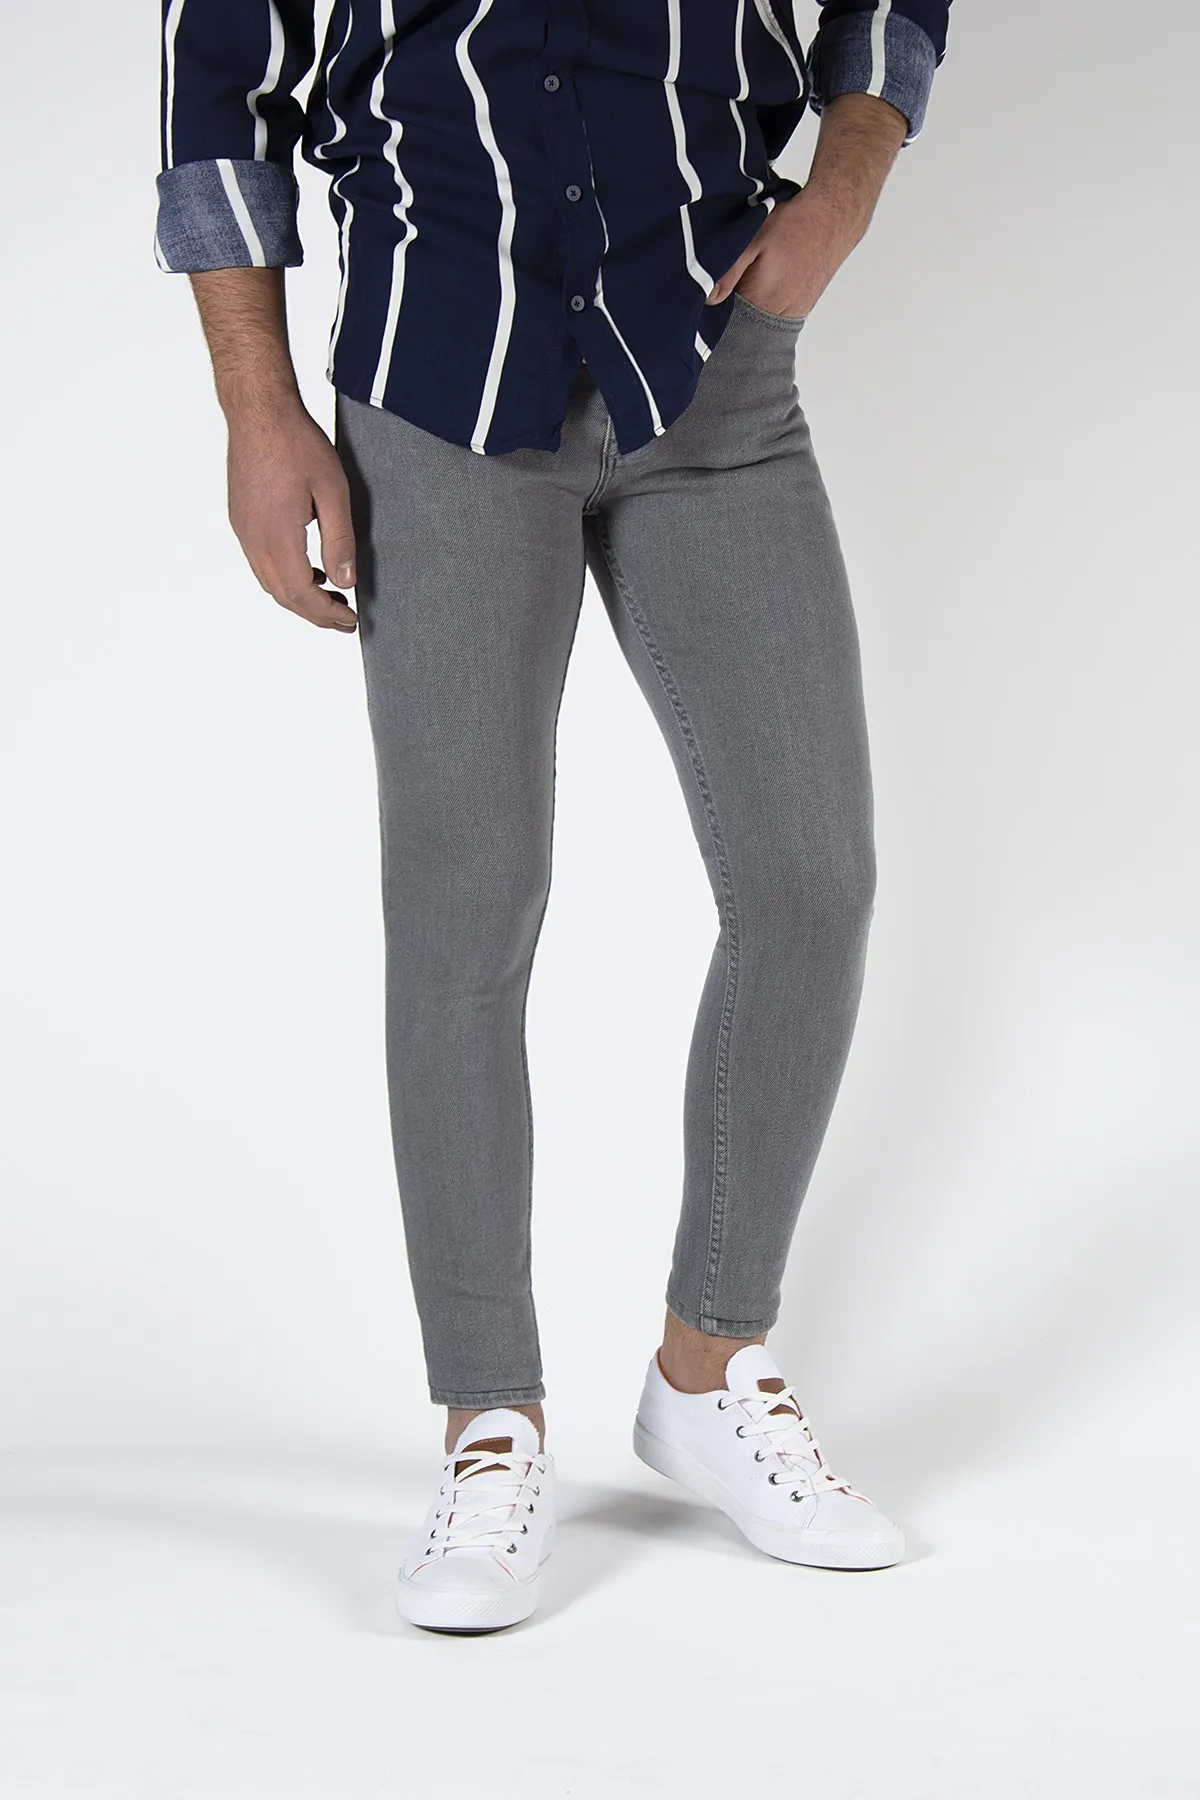 Male Jeans Pants 8K-2100306-004-1 Gray